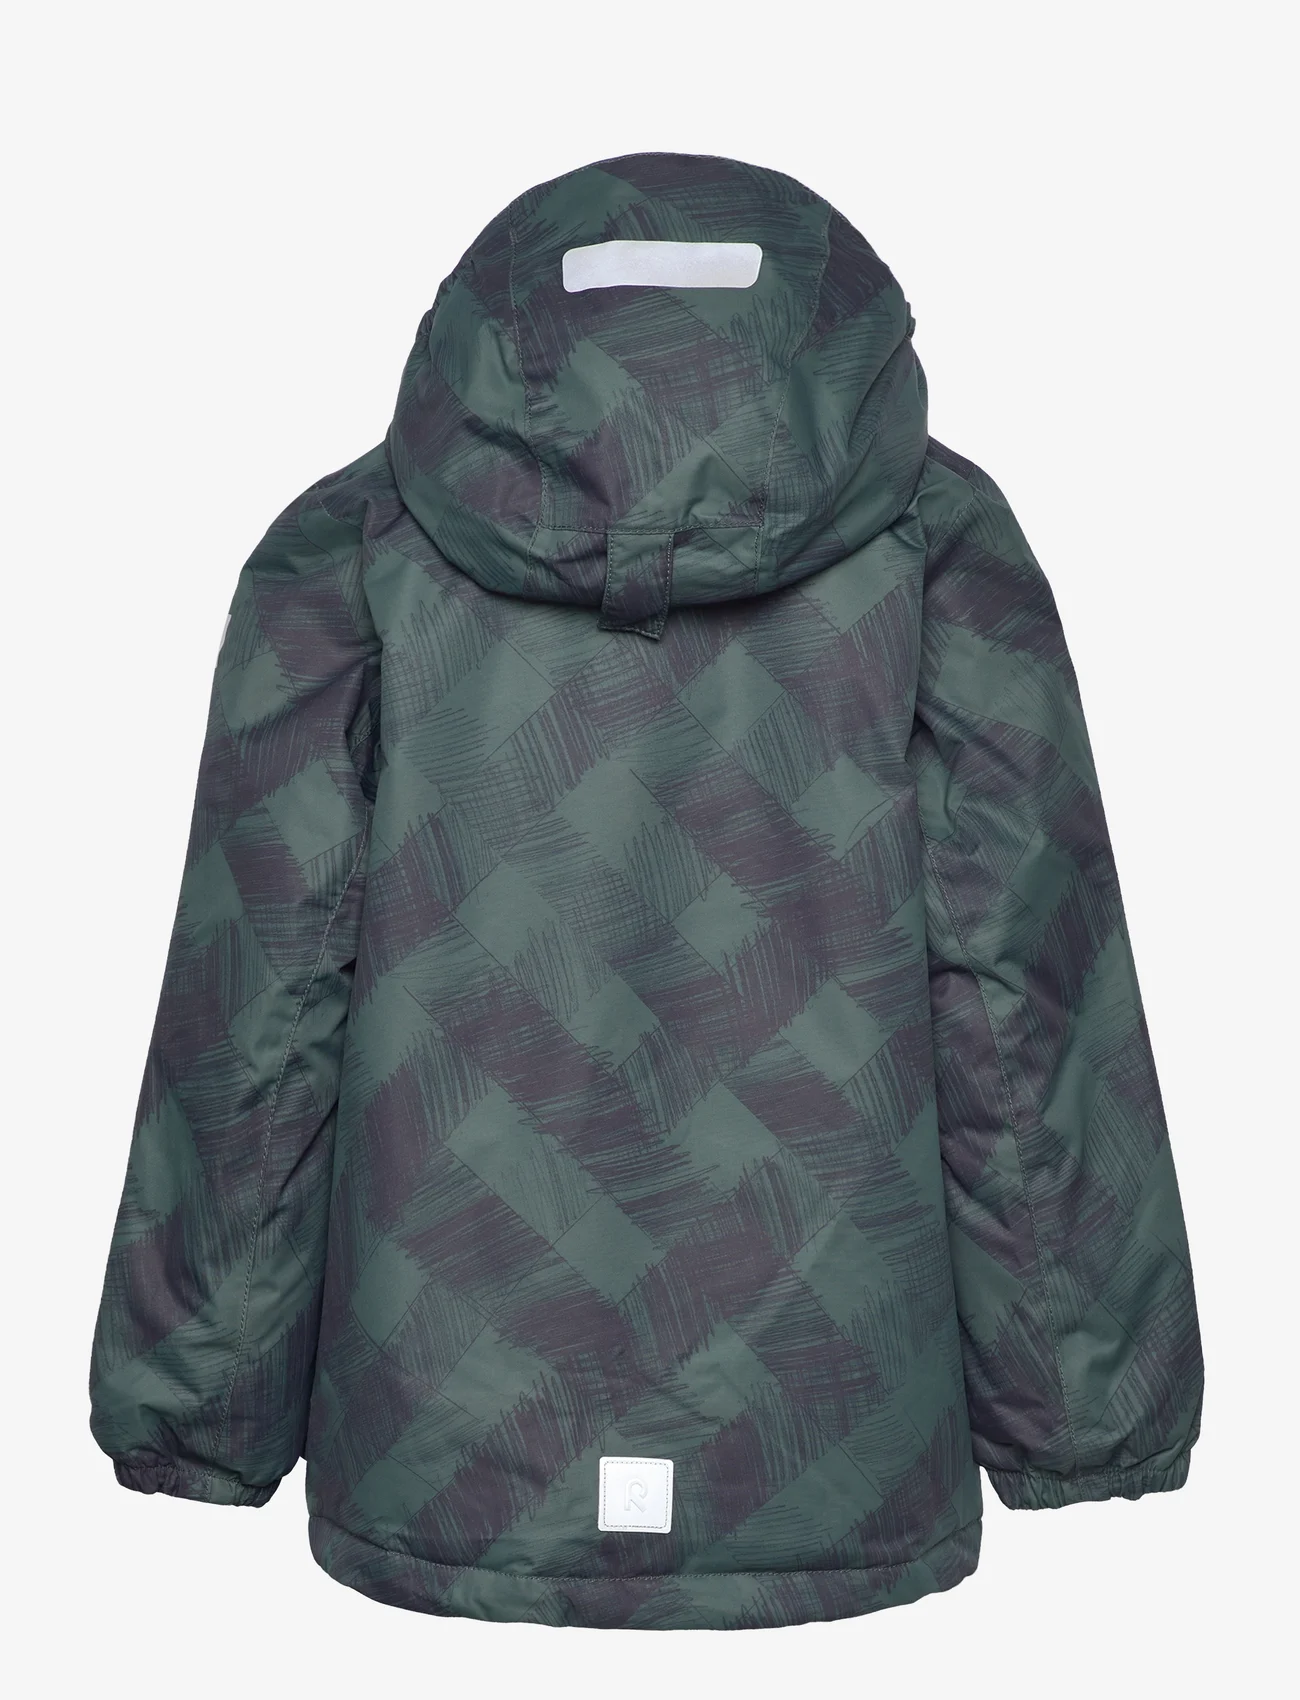 Reima - Winter jacket, Nuotio - talvitakit - thyme green - 1